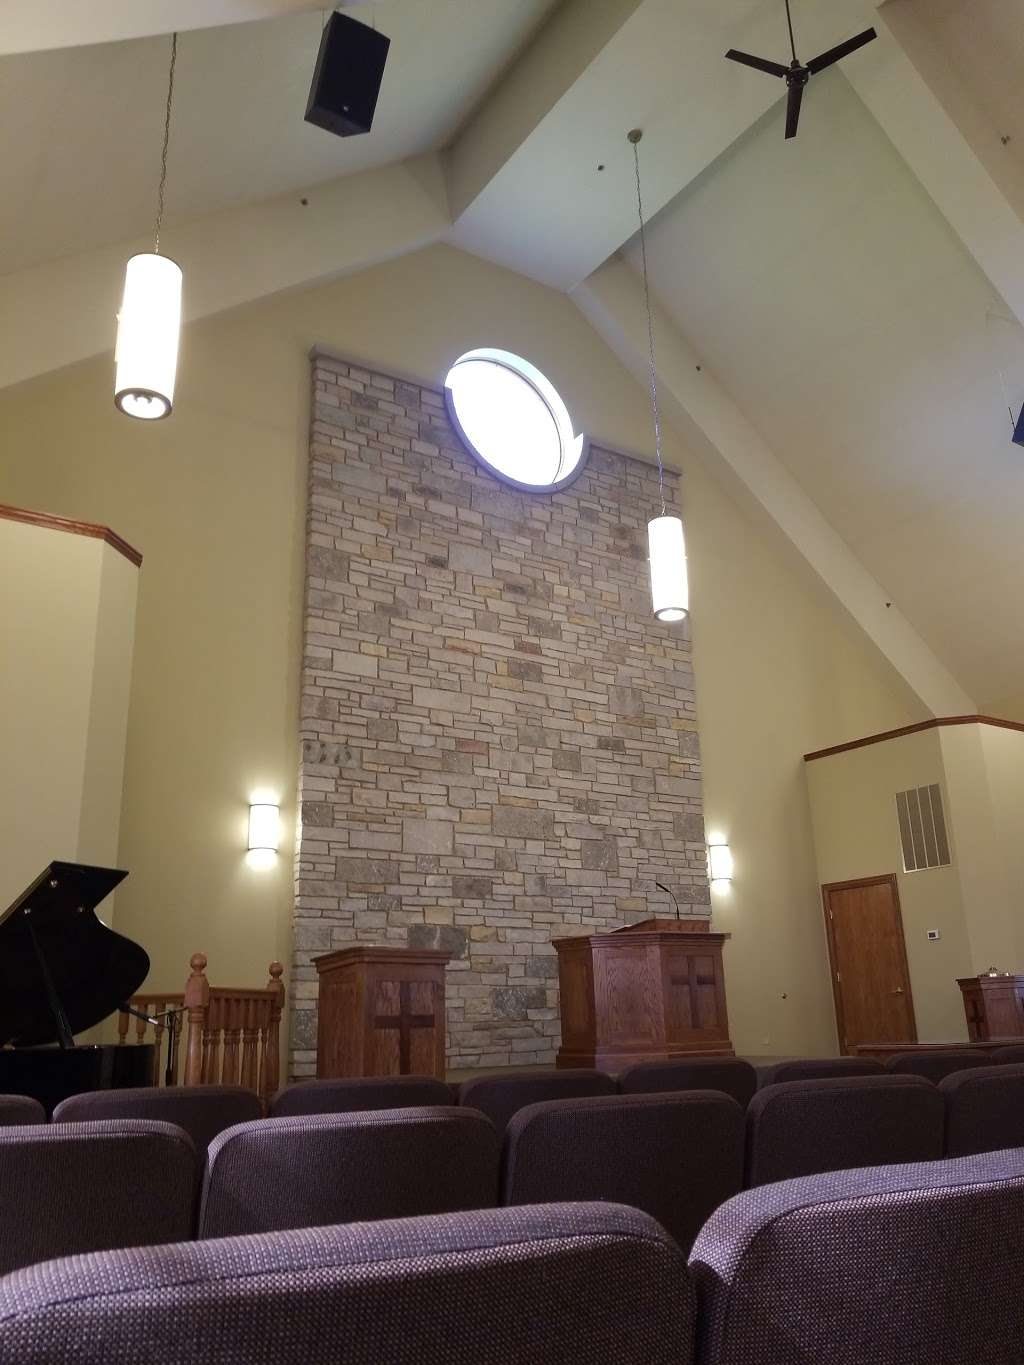 New Covenant Community Church | 1995 Mills Rd, Joliet, IL 60433, USA | Phone: (815) 603-8533